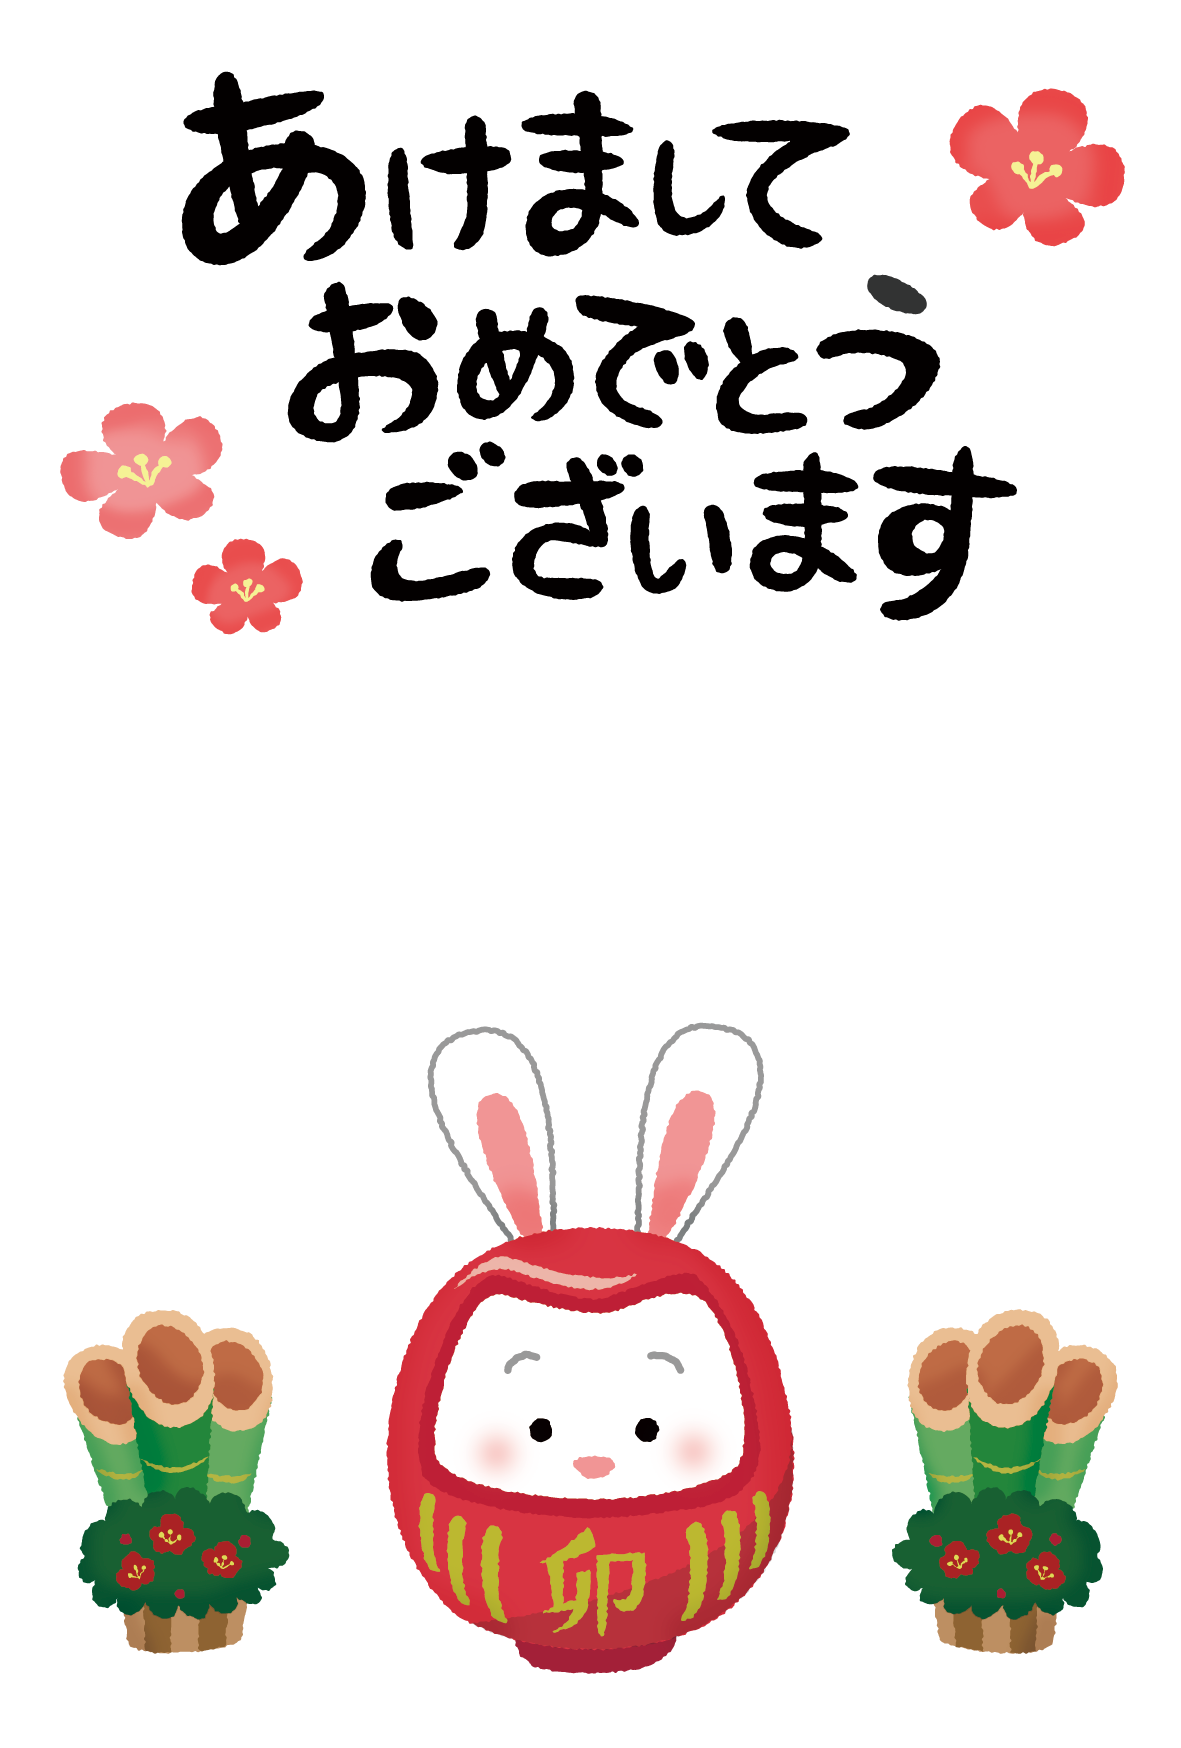 Plantilla de Tarjeta de Año Nuevo gratis (conejo daruma) 